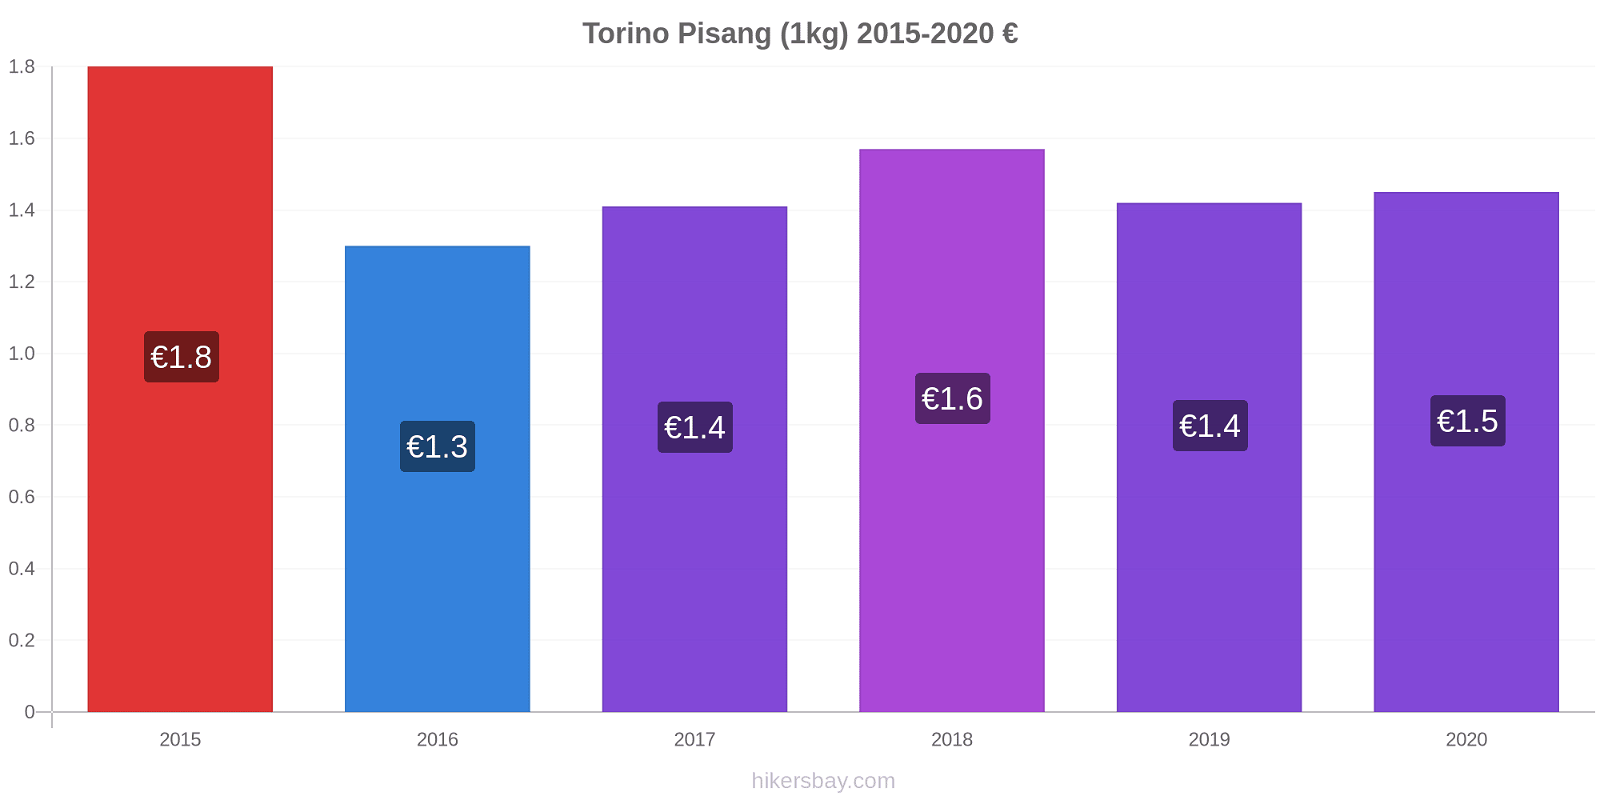 Torino perubahan harga Pisang (1kg) hikersbay.com